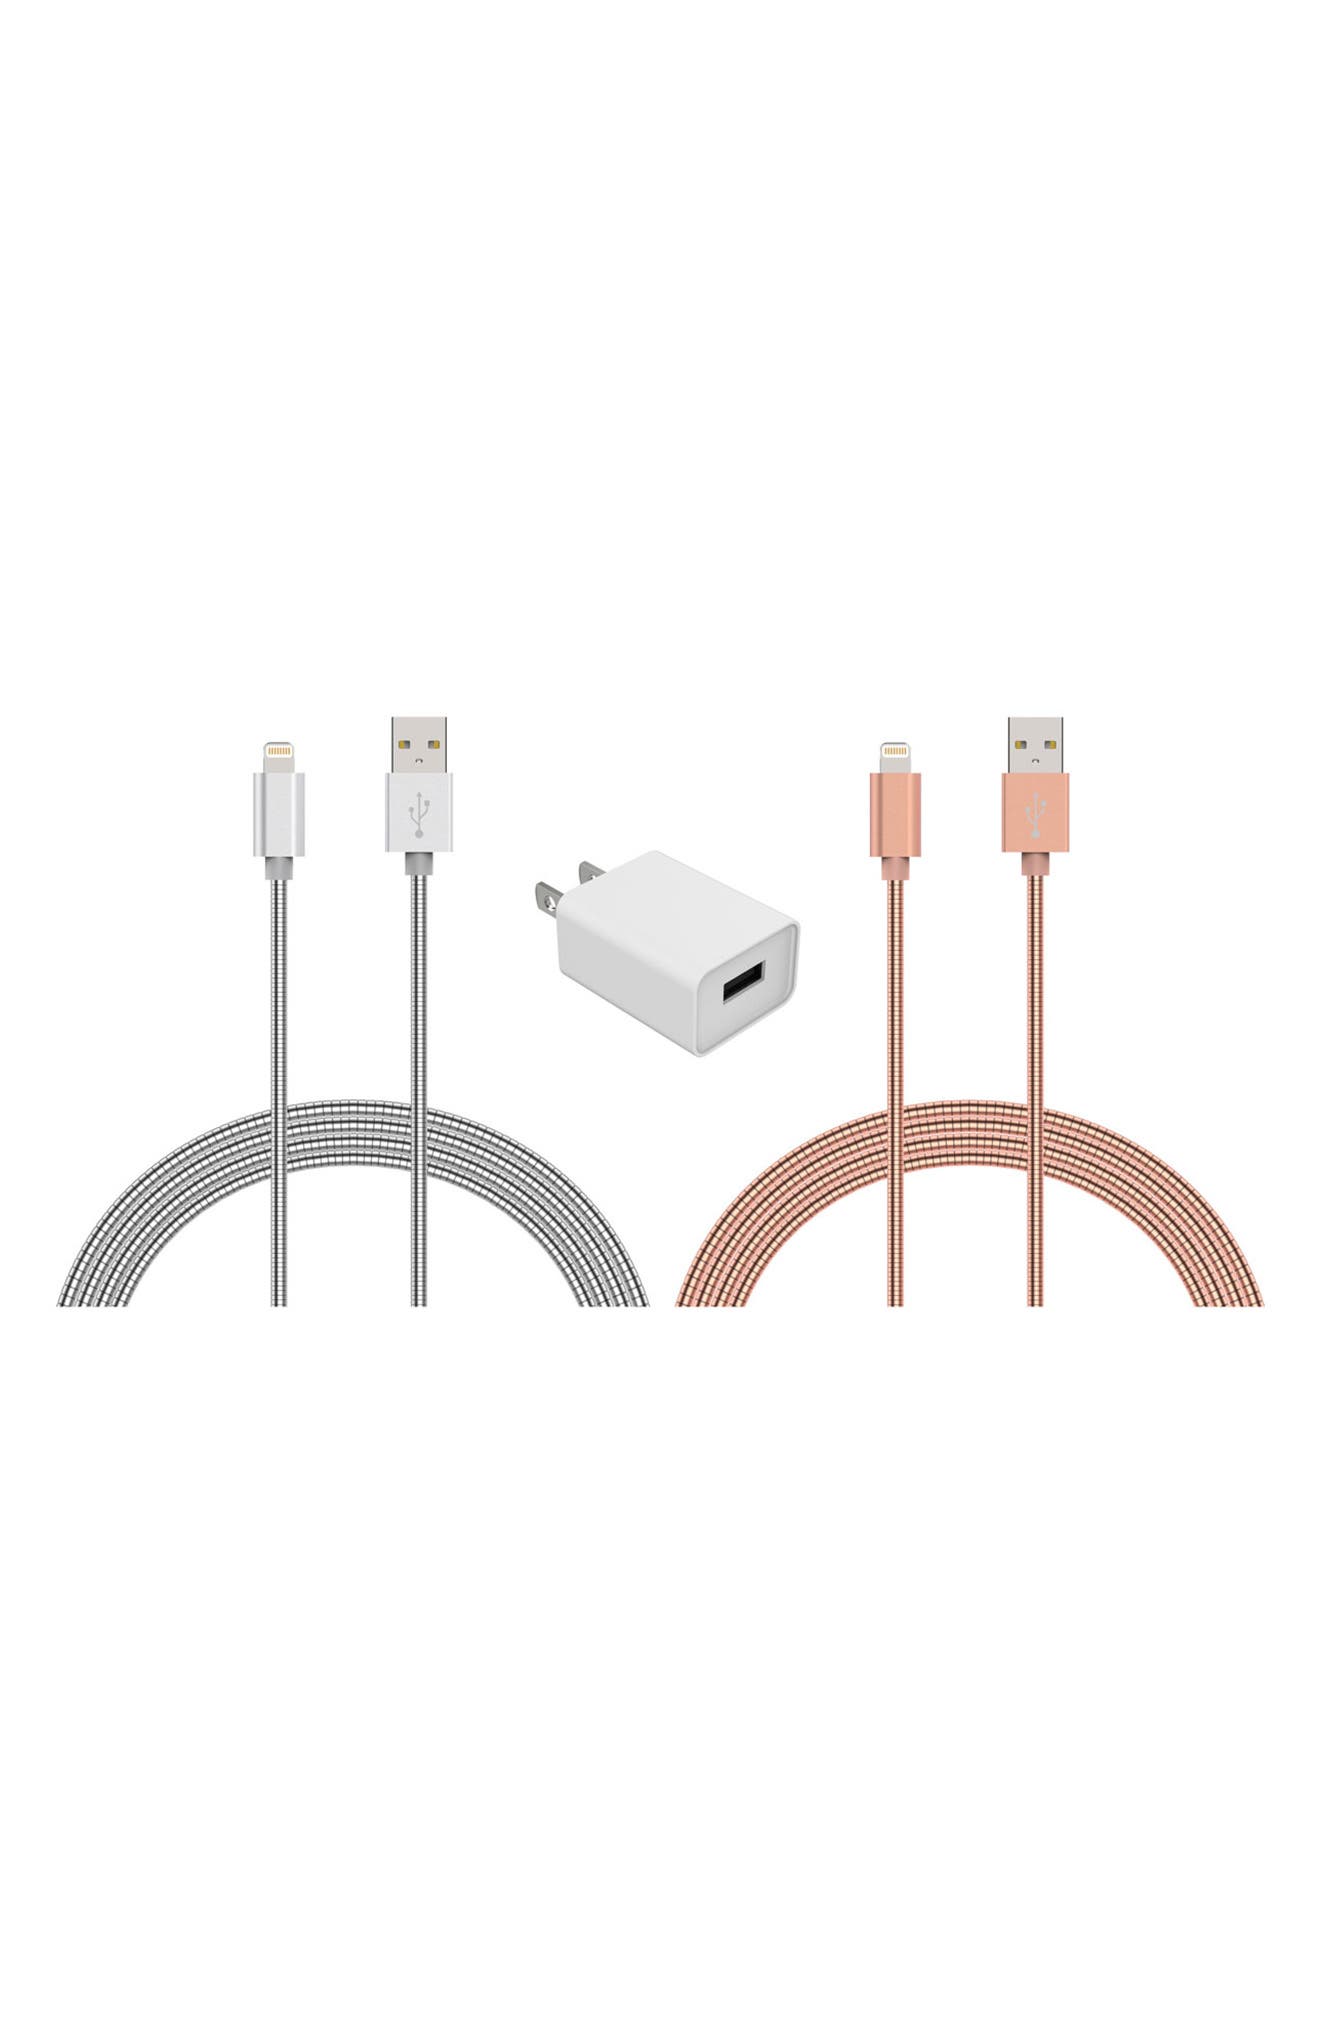 USB-кабель для зарядки и адаптер Lightning, набор из 3 предметов — серебристый/розовое золото THE POSH TECH